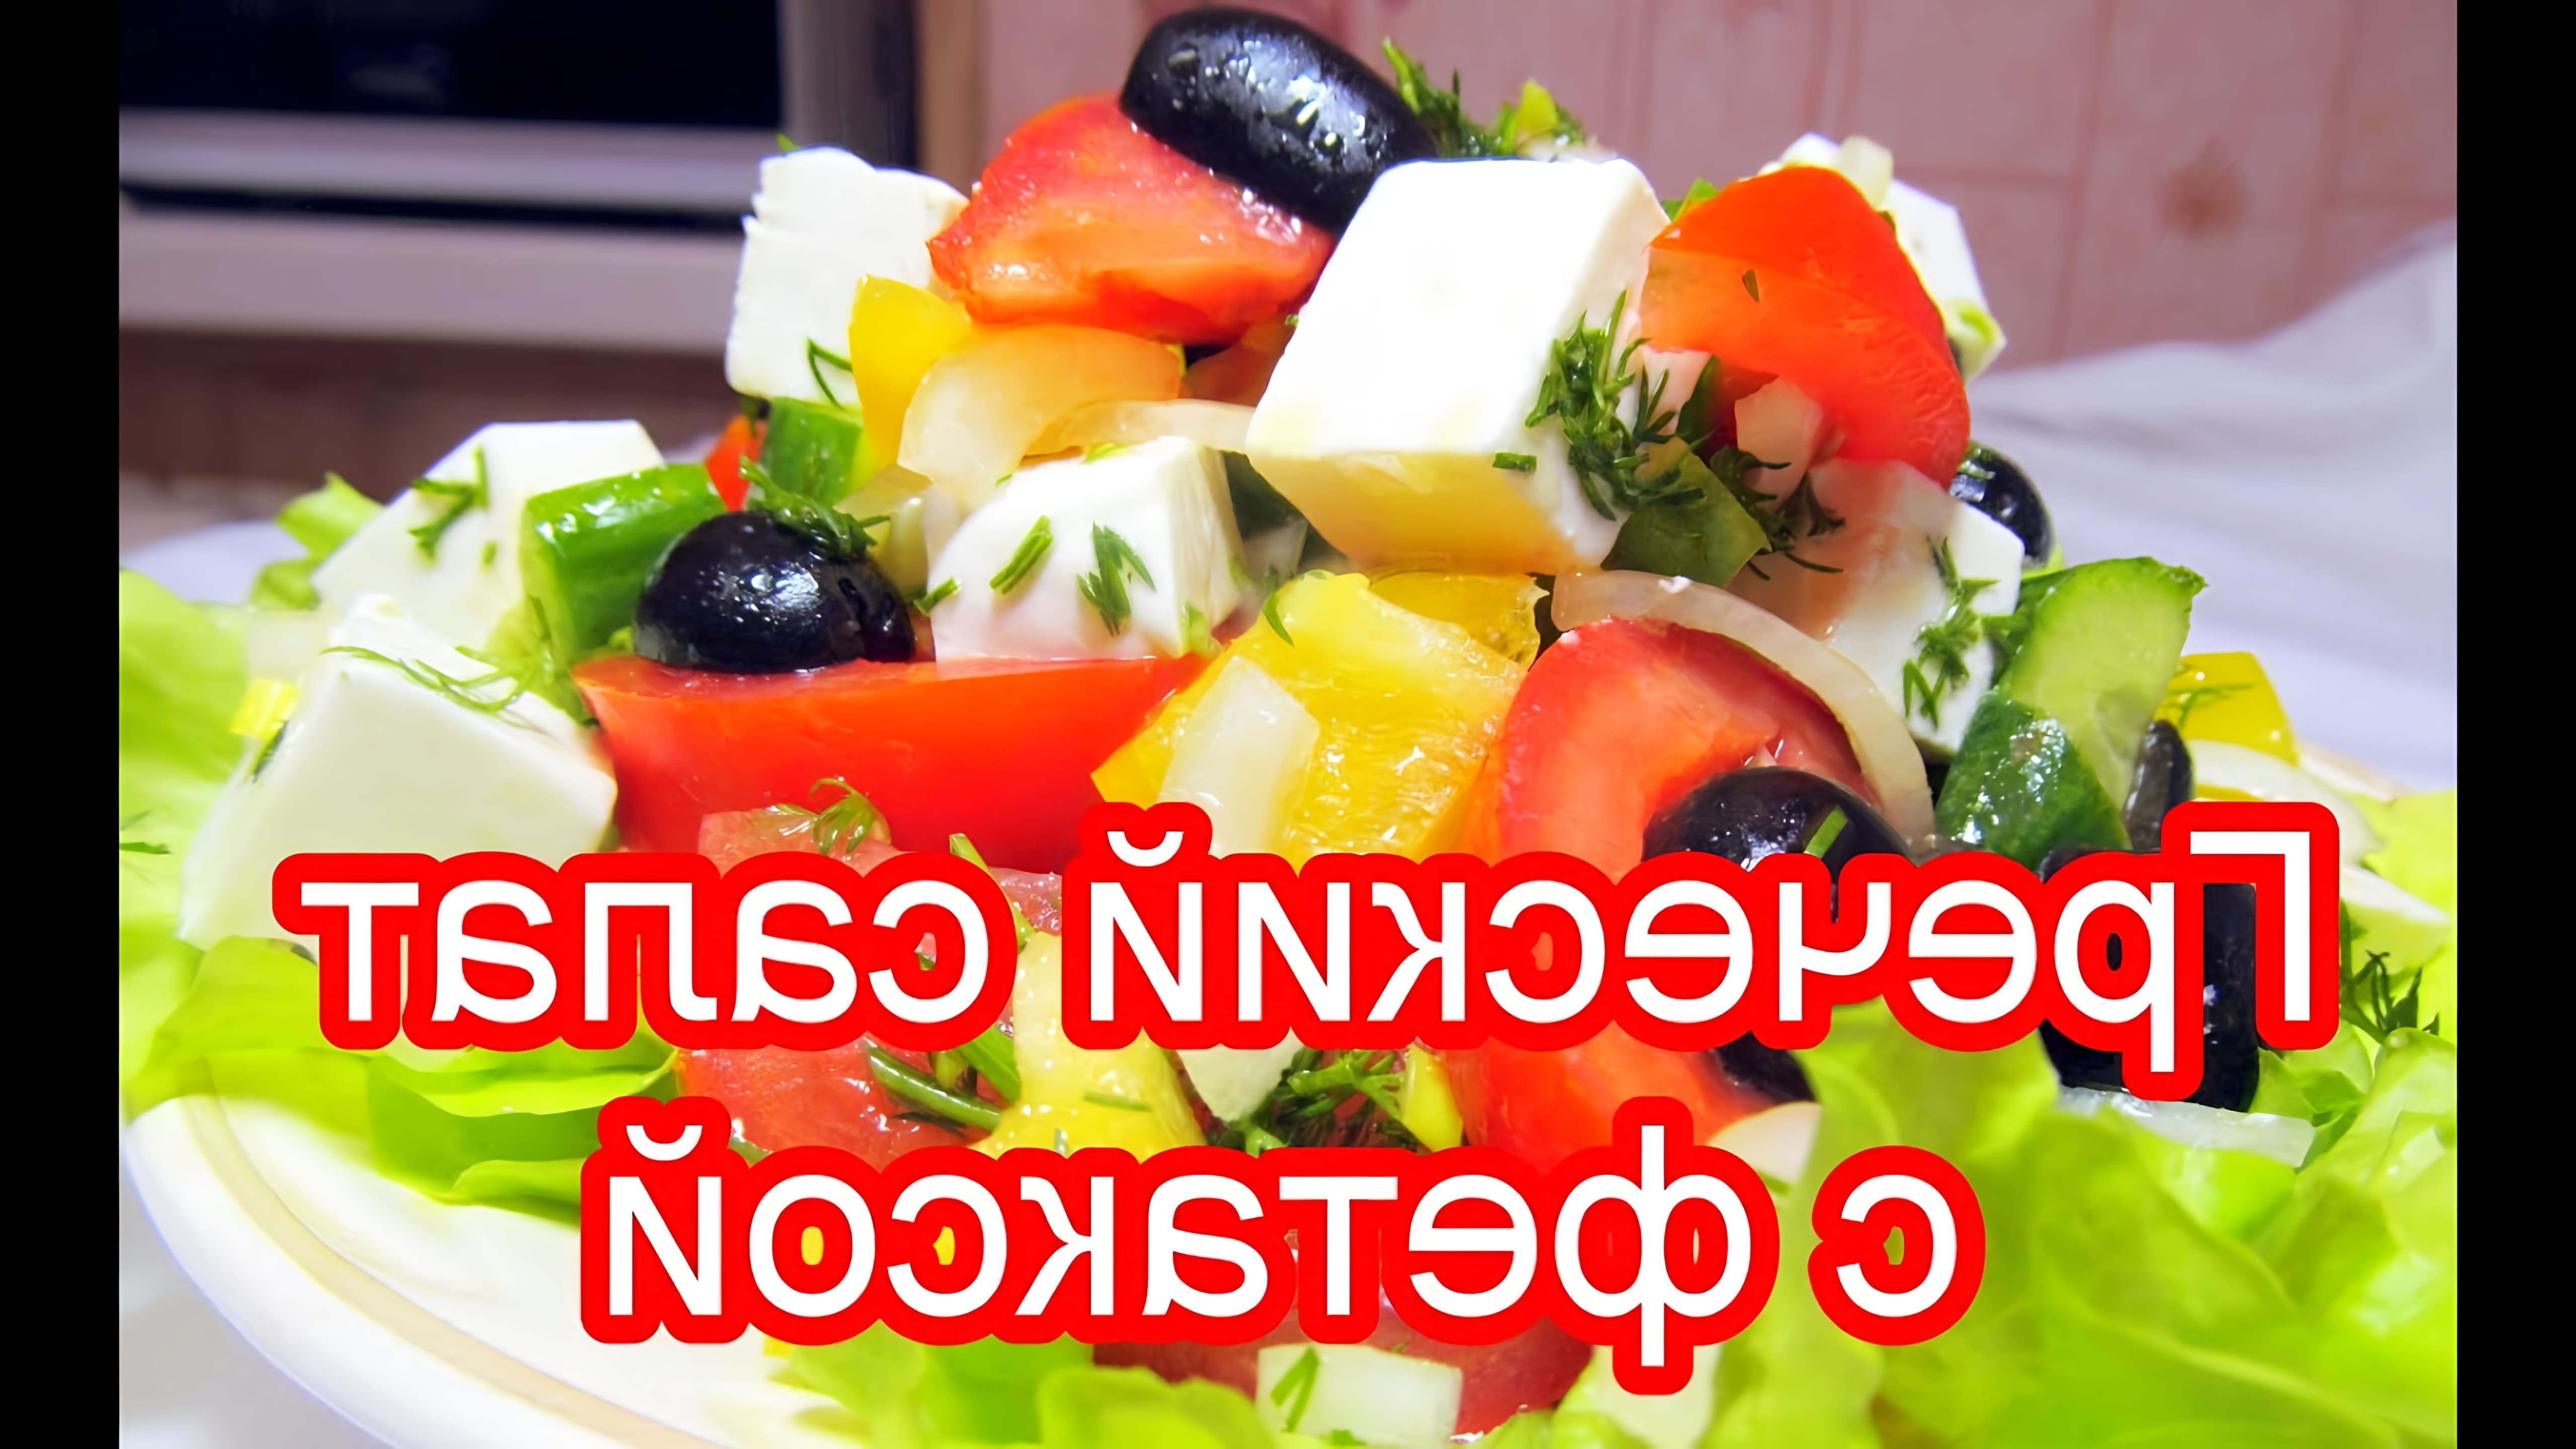 В этом видео-ролике вы увидите, как приготовить вкусный и полезный греческий салат с сыром фетакса